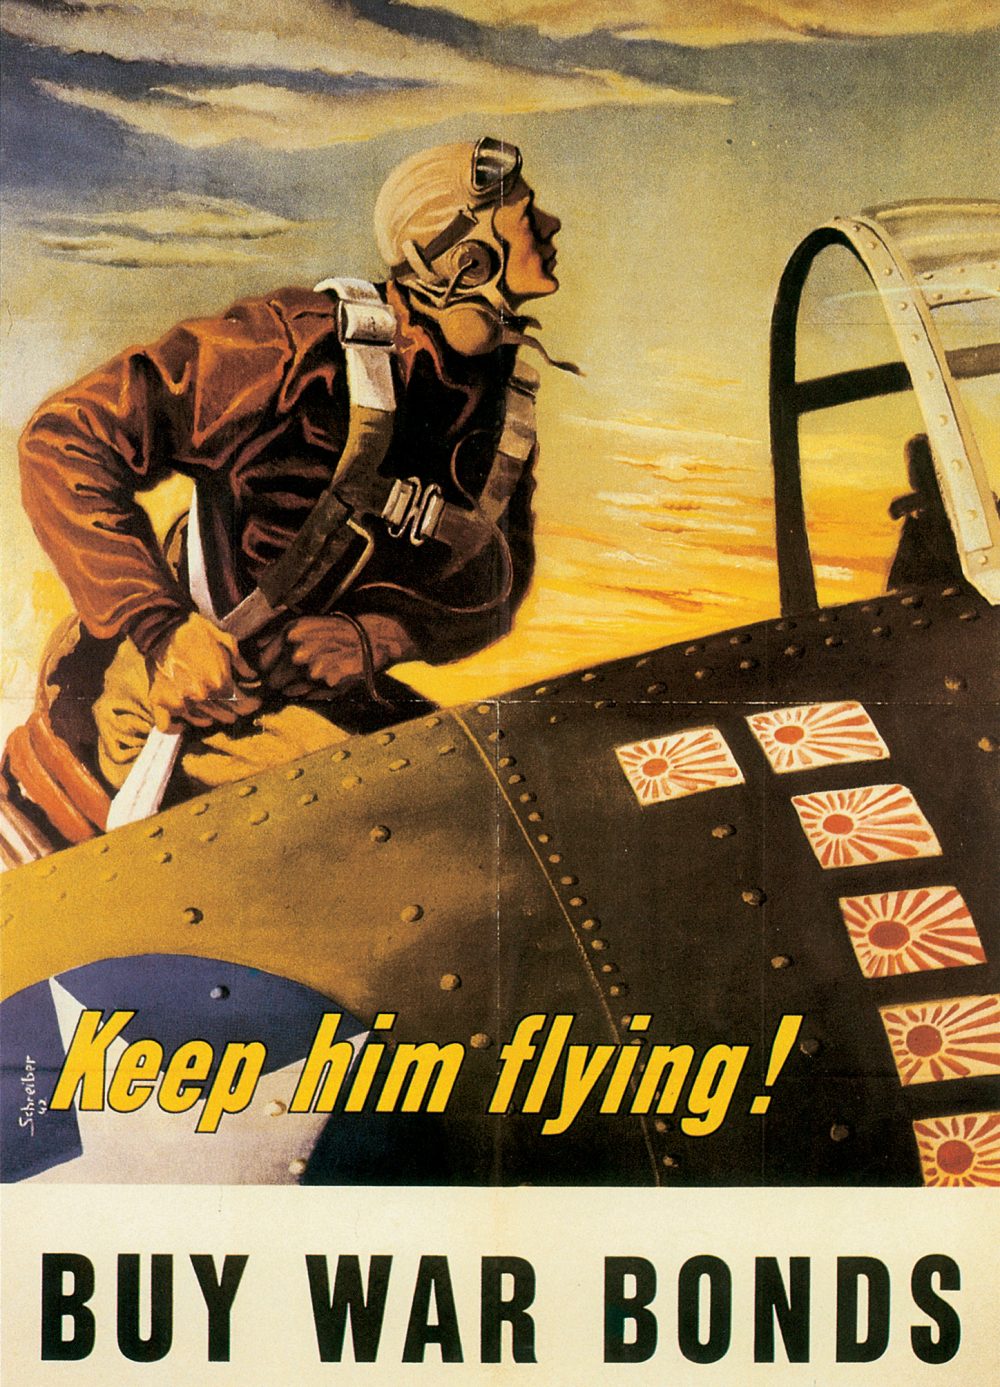 US War Bond poster, 1942